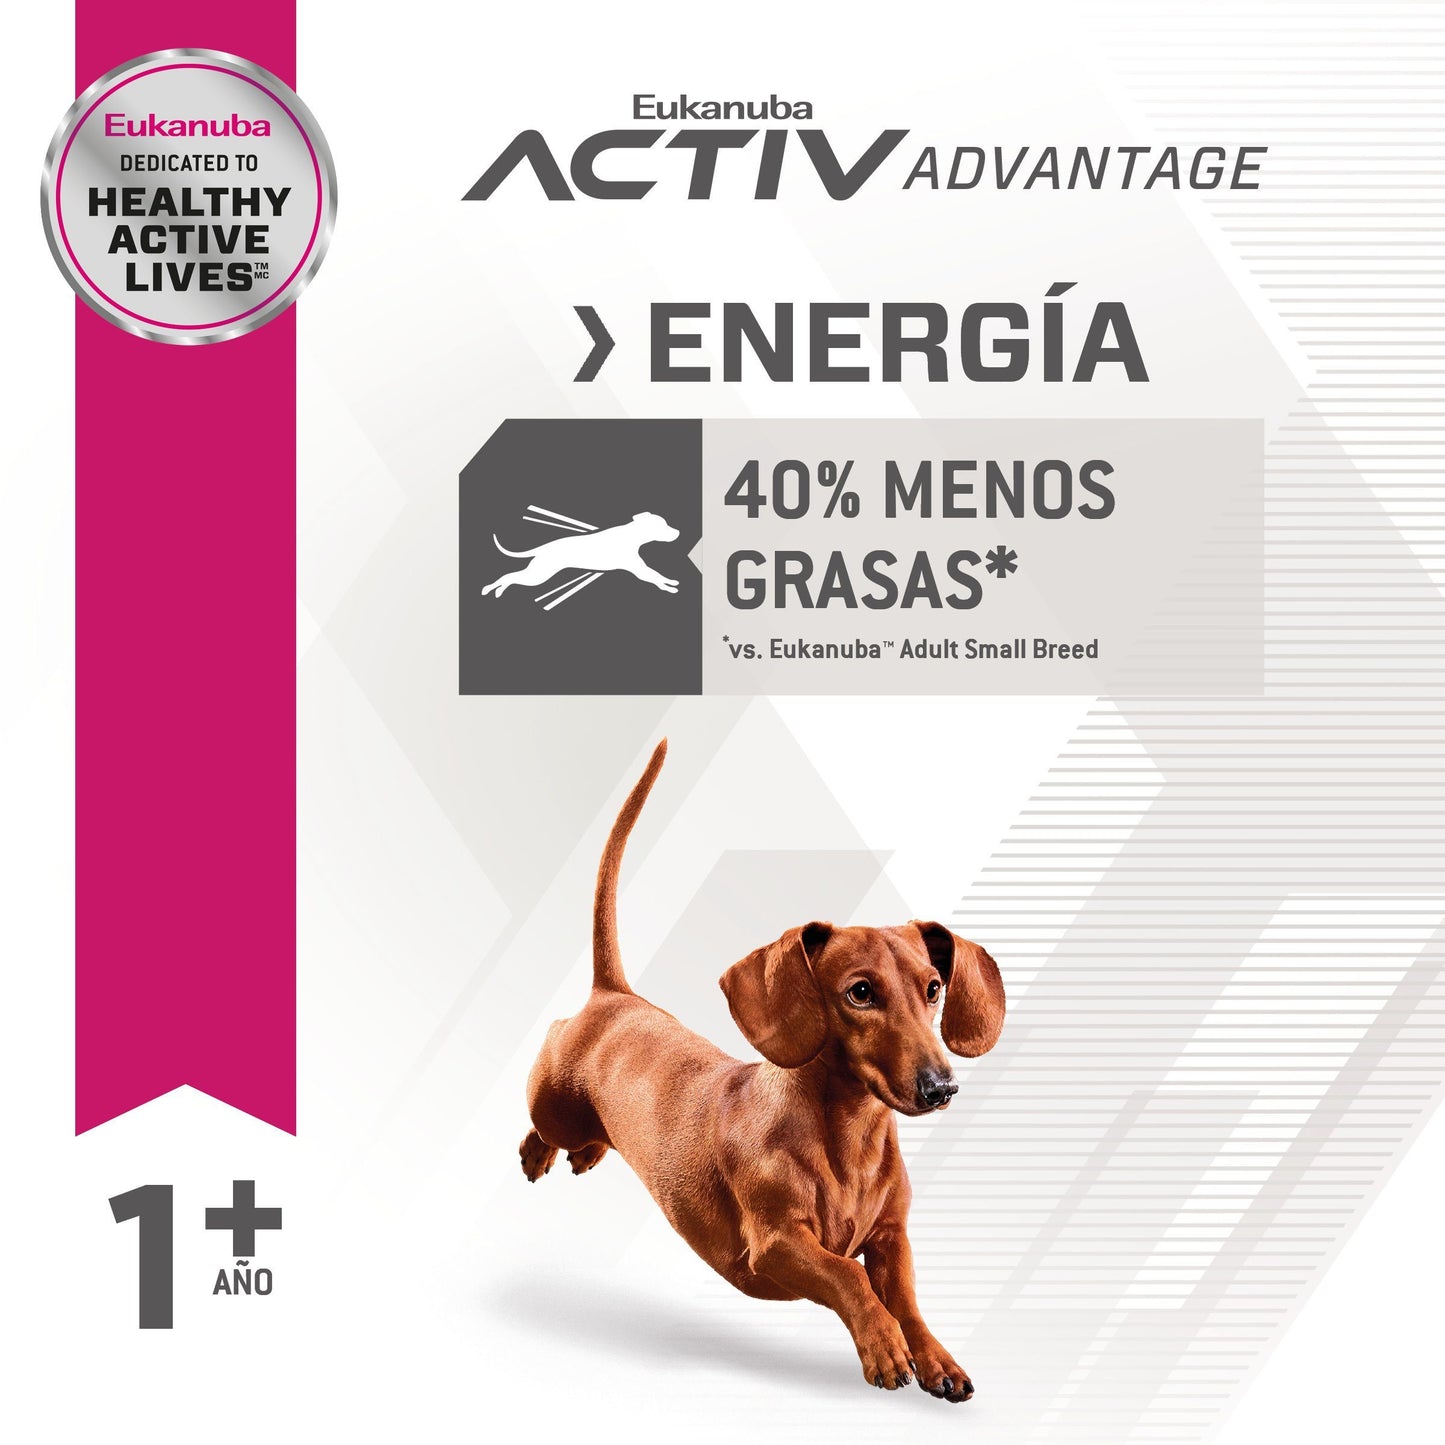 Bulto de Croquetas Perro Adulto Eukanuba Fit Body Weight Control 6.8kg | Alimento Seco Perros a domicilio CDMX | Disponible en Petzer.mx